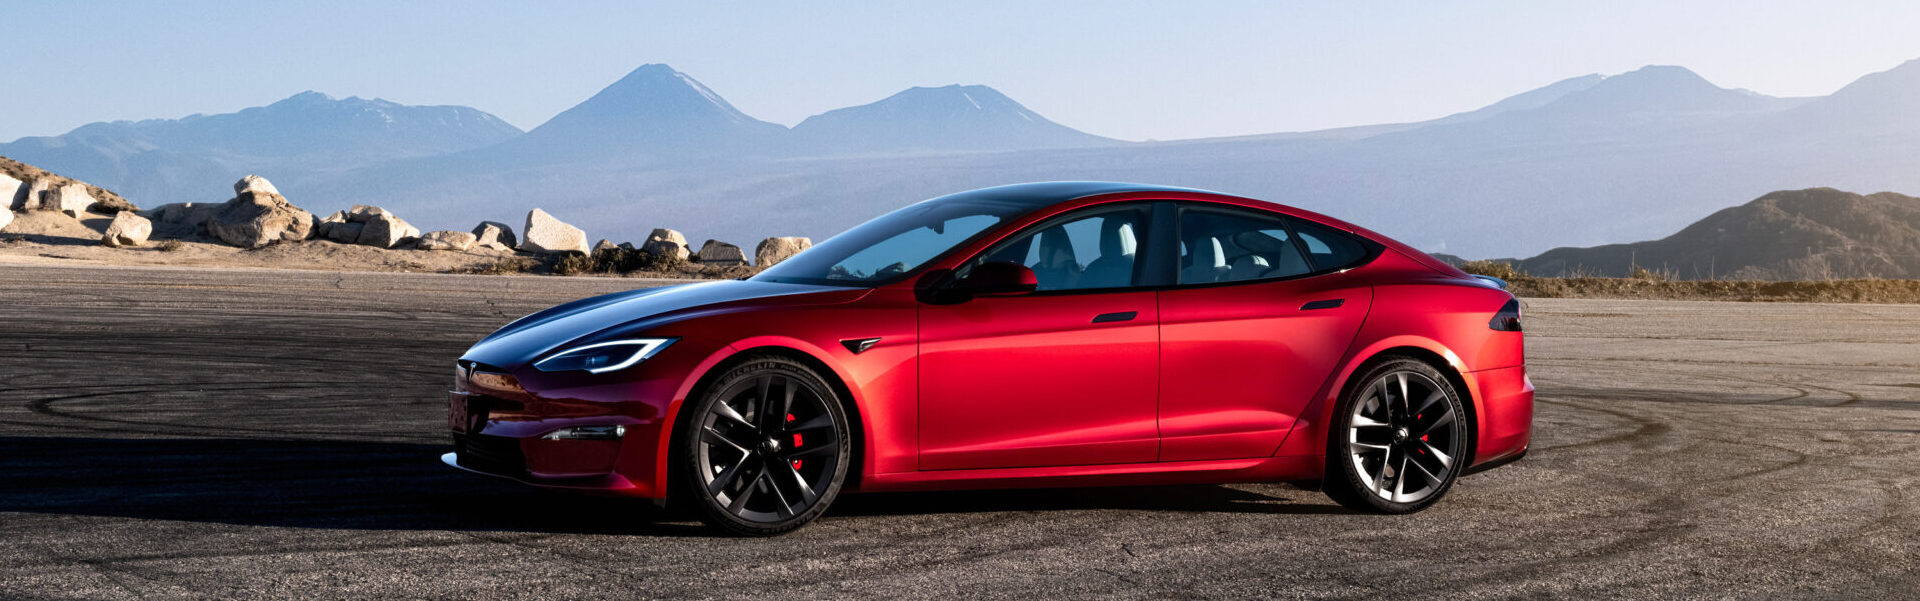 Lexus vaihtui Teslaan – vaikutus omaan talouteeni